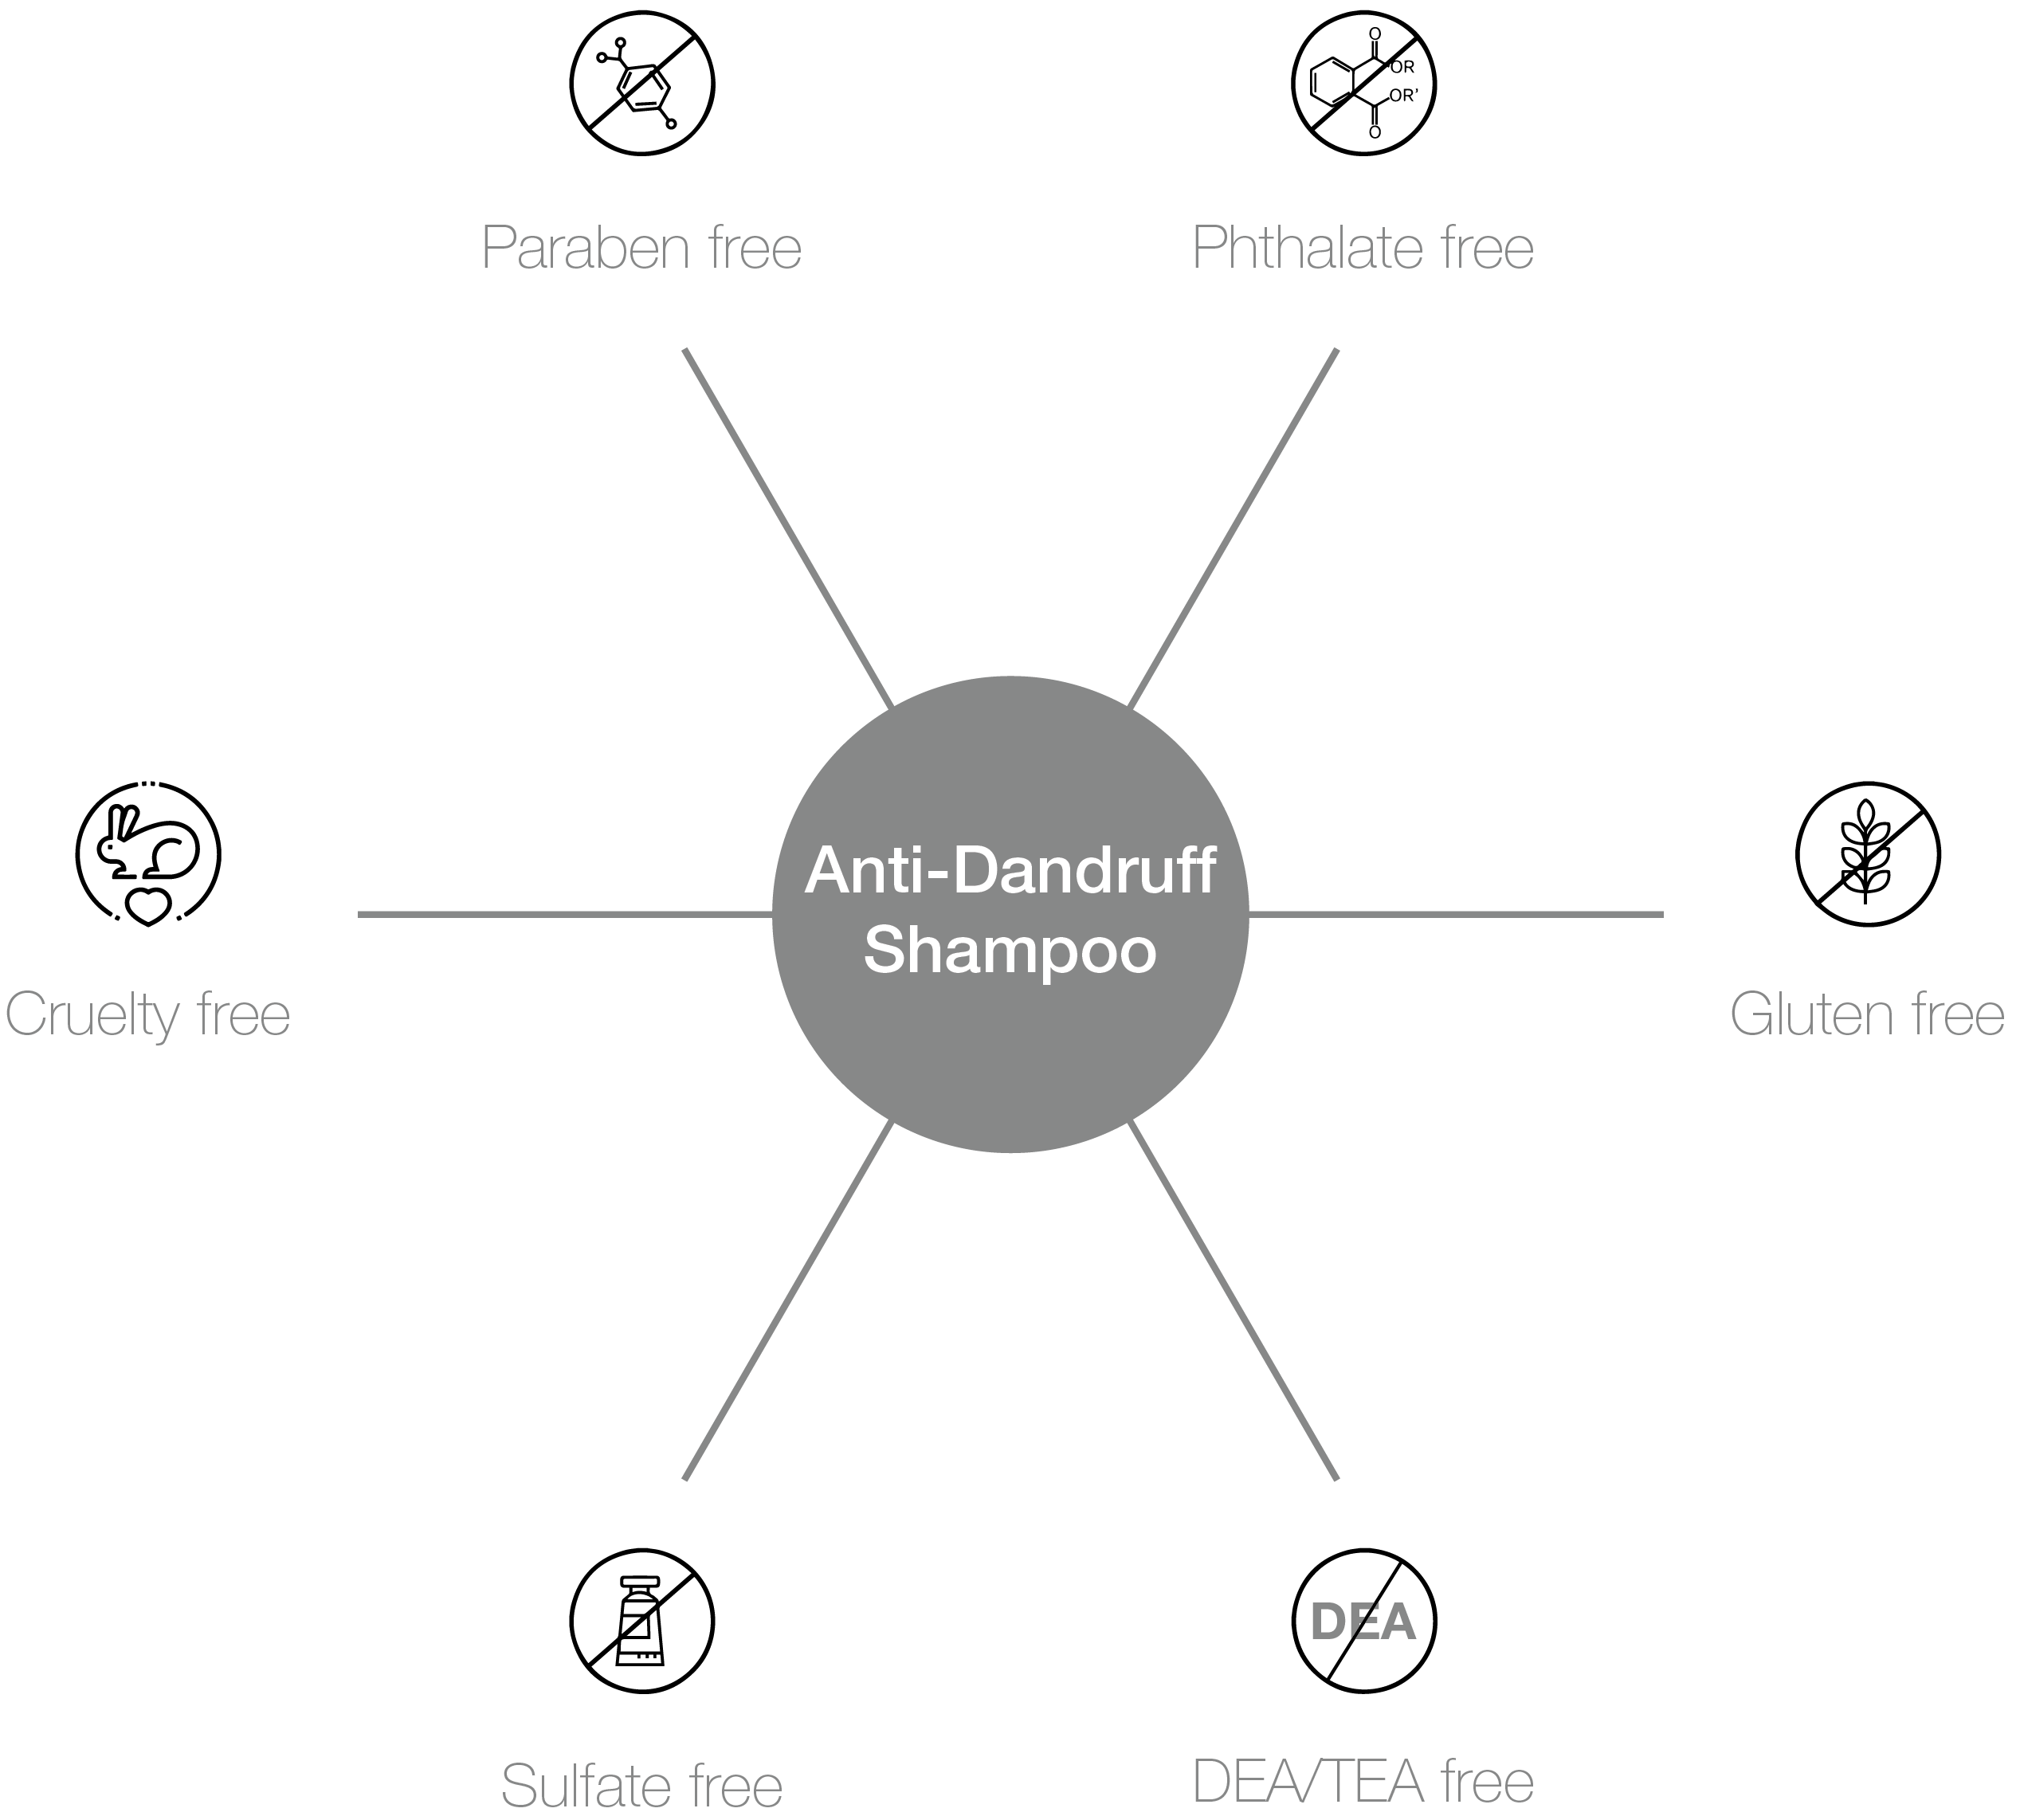 Anti-Dandruff Shampoo Pro-benefits